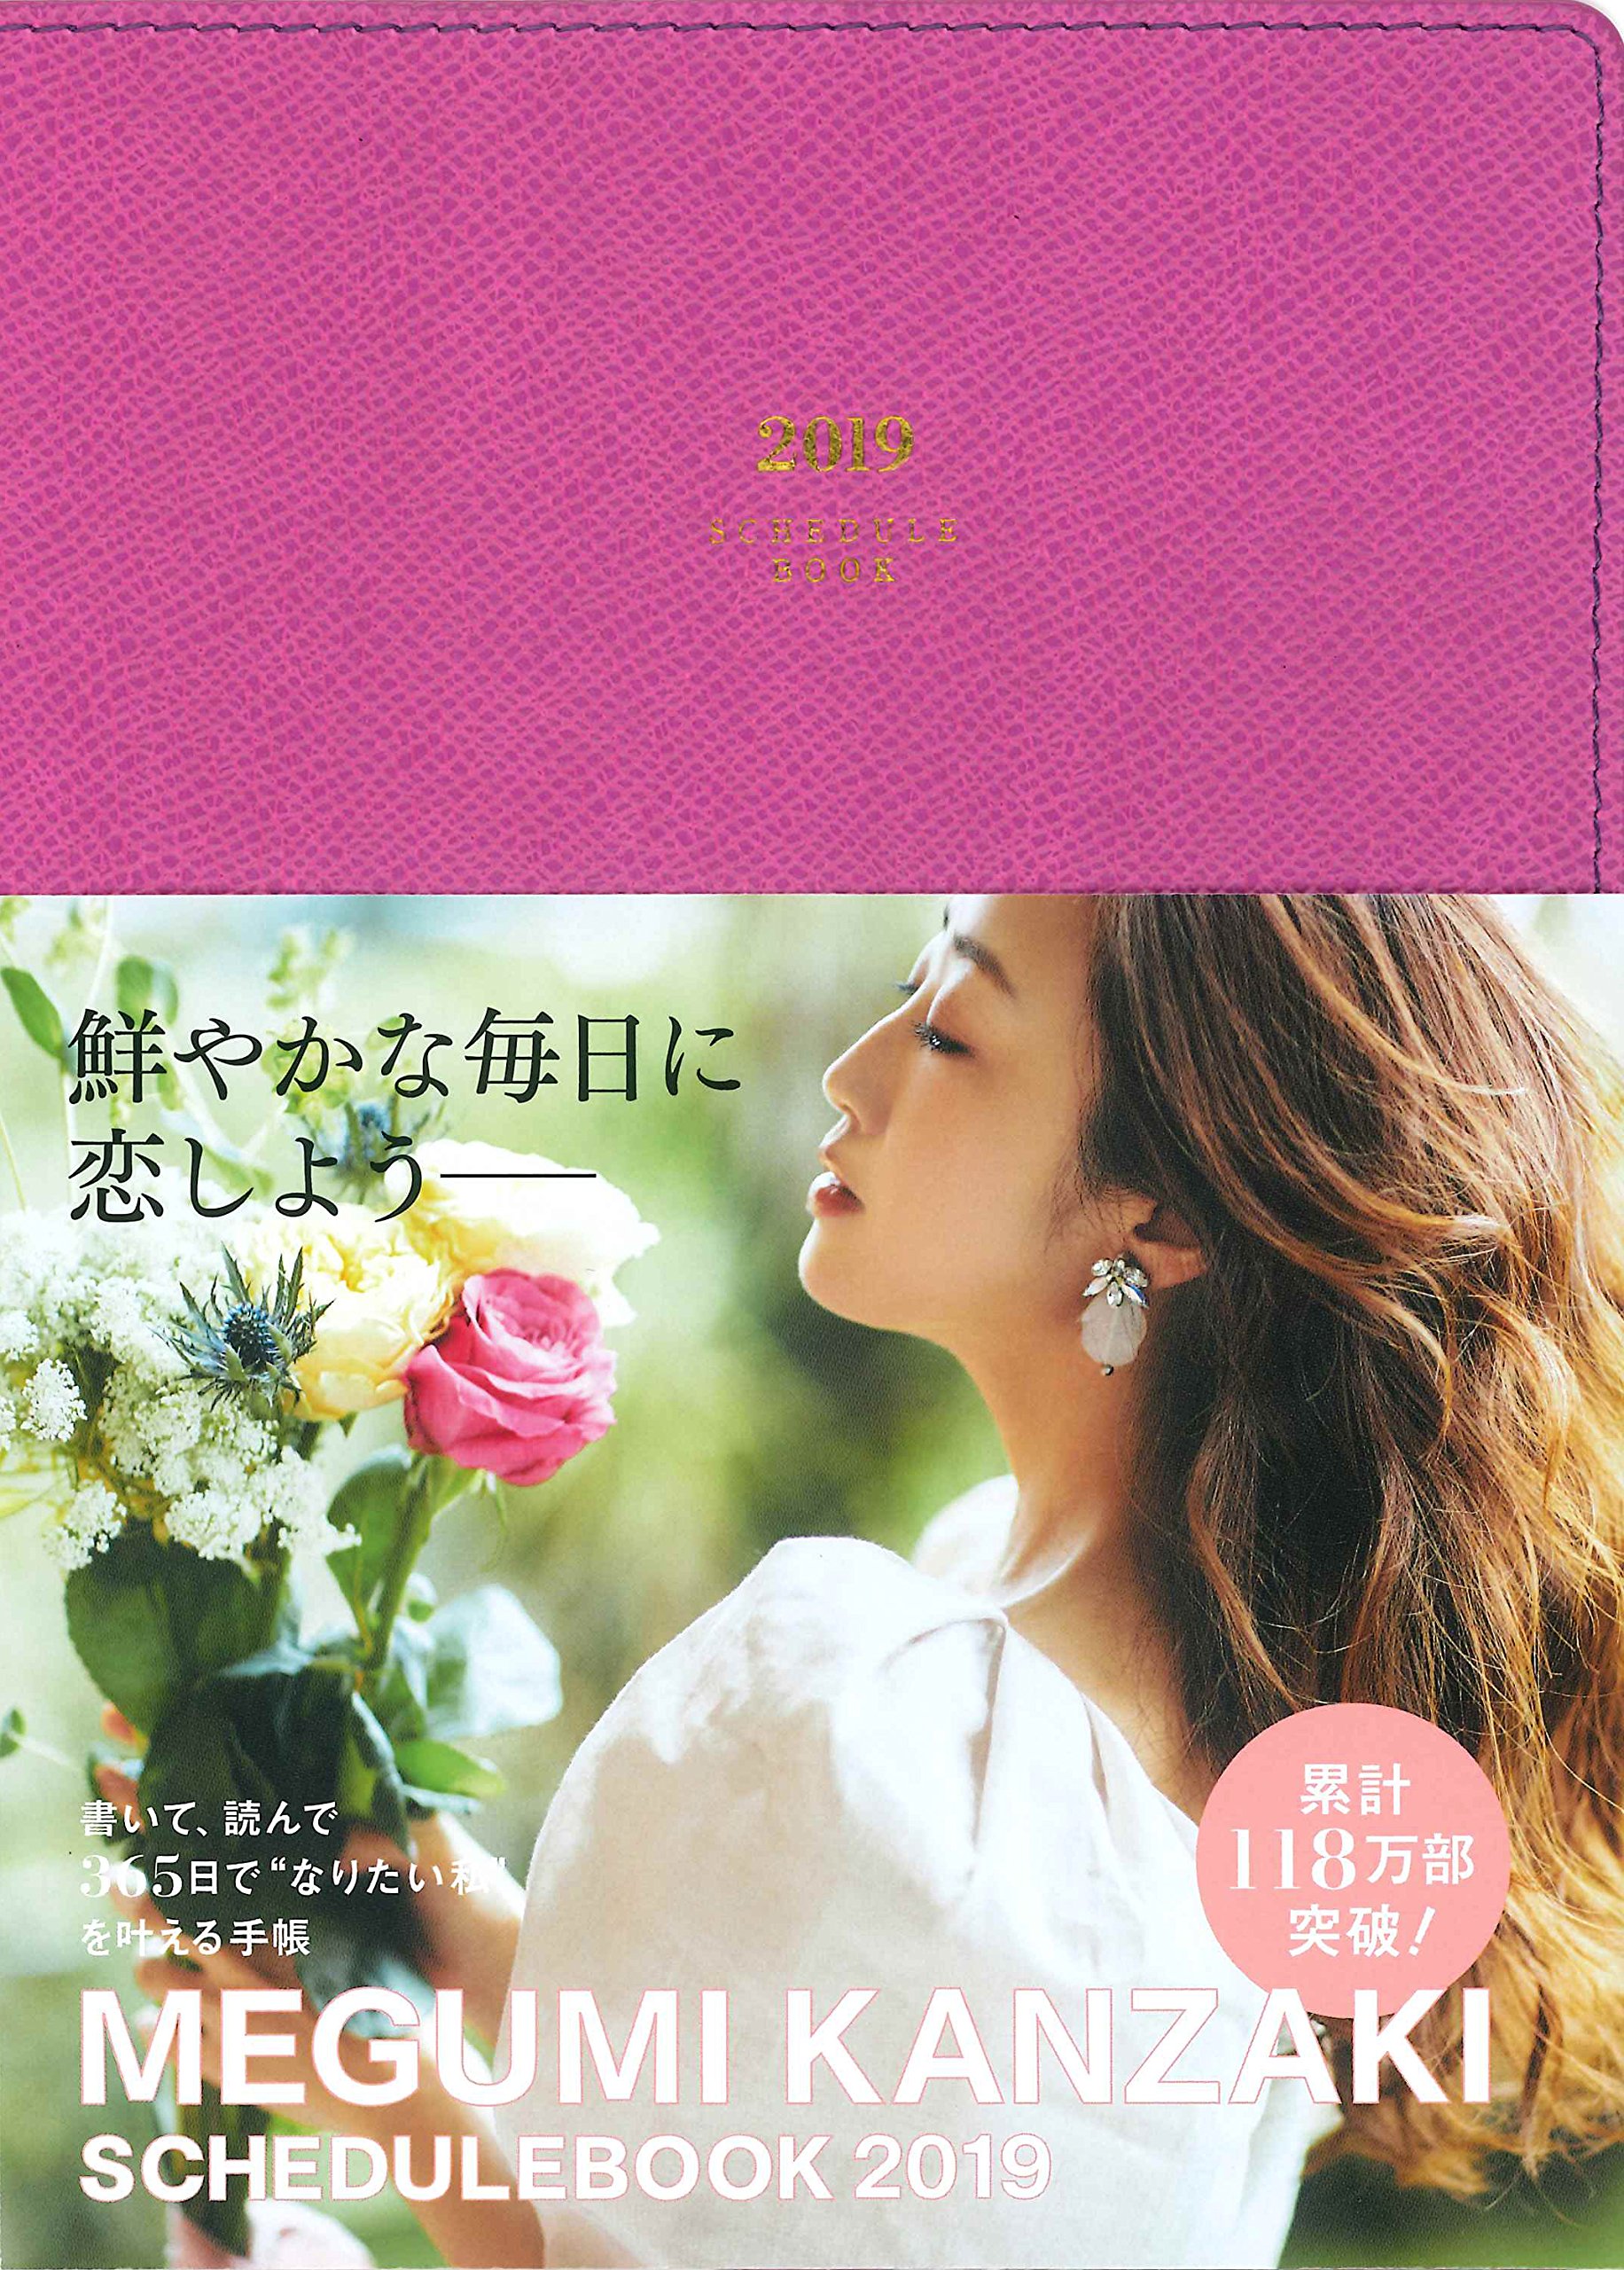 神崎恵 2019年版スケジュールブック発売 ピンクとパープル